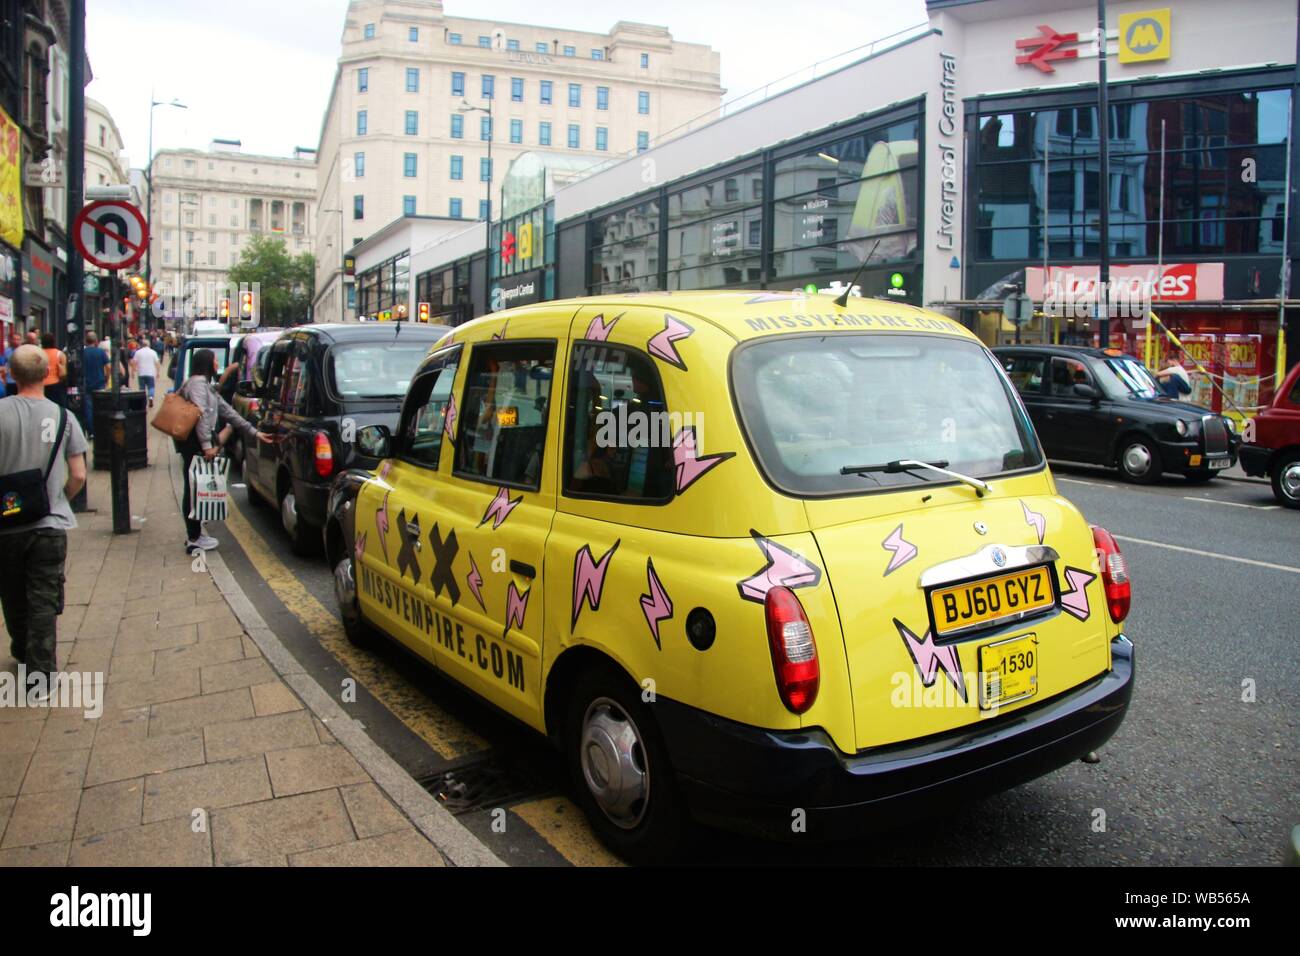 Straßenszene in Liverpool Lime Street. Ein Taxi in Pop Stil gemalt. Liverpool Station auf der gegenüberliegenden Seite. England, Europa. Stockfoto